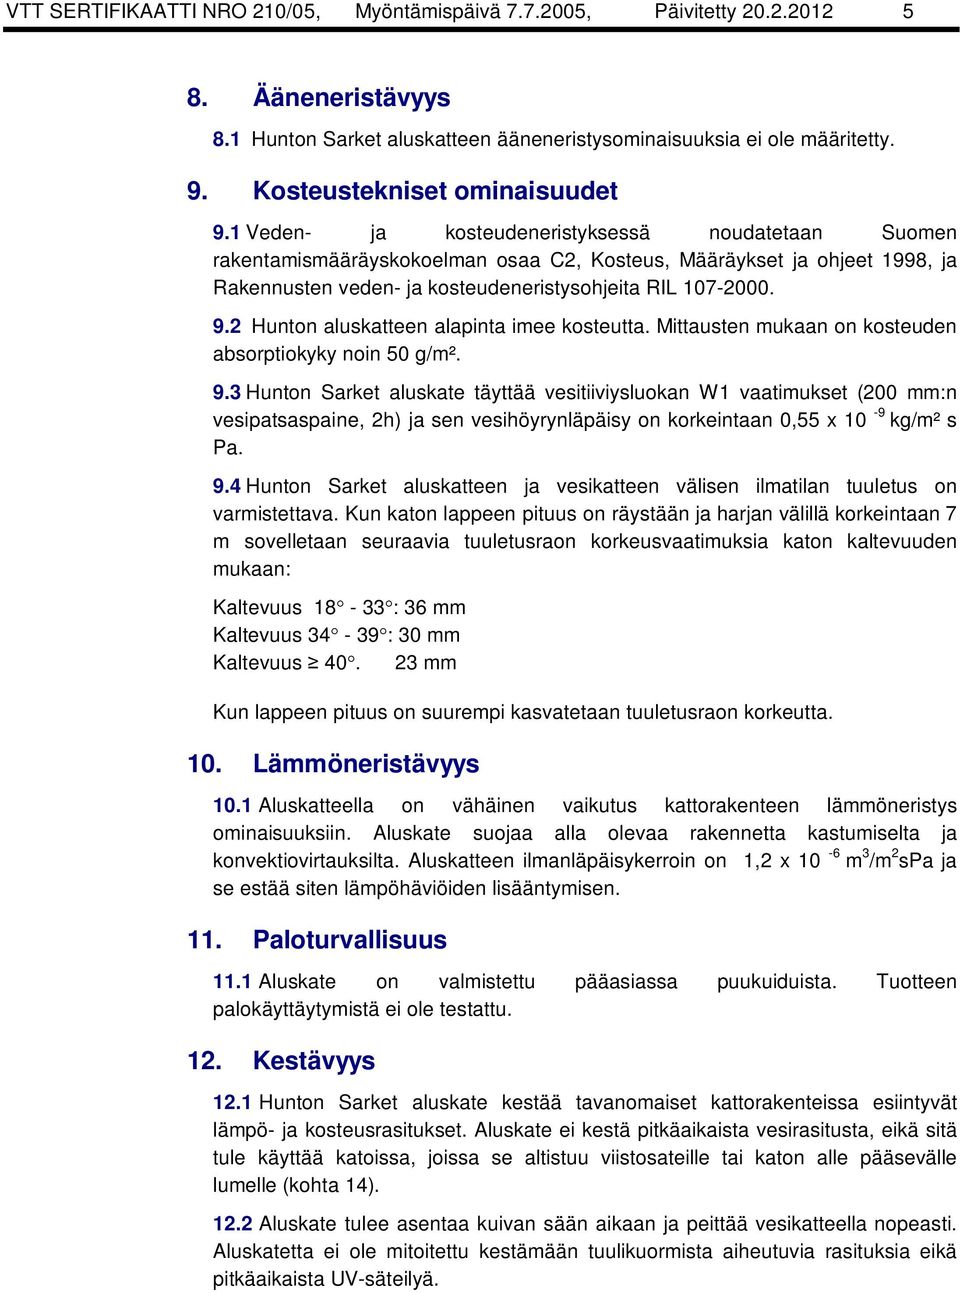 1 Veden- ja kosteudeneristyksessä noudatetaan Suomen rakentamismääräyskokoelman osaa C2, Kosteus, Määräykset ja ohjeet 1998, ja Rakennusten veden- ja kosteudeneristysohjeita RIL 107-2000. 9.